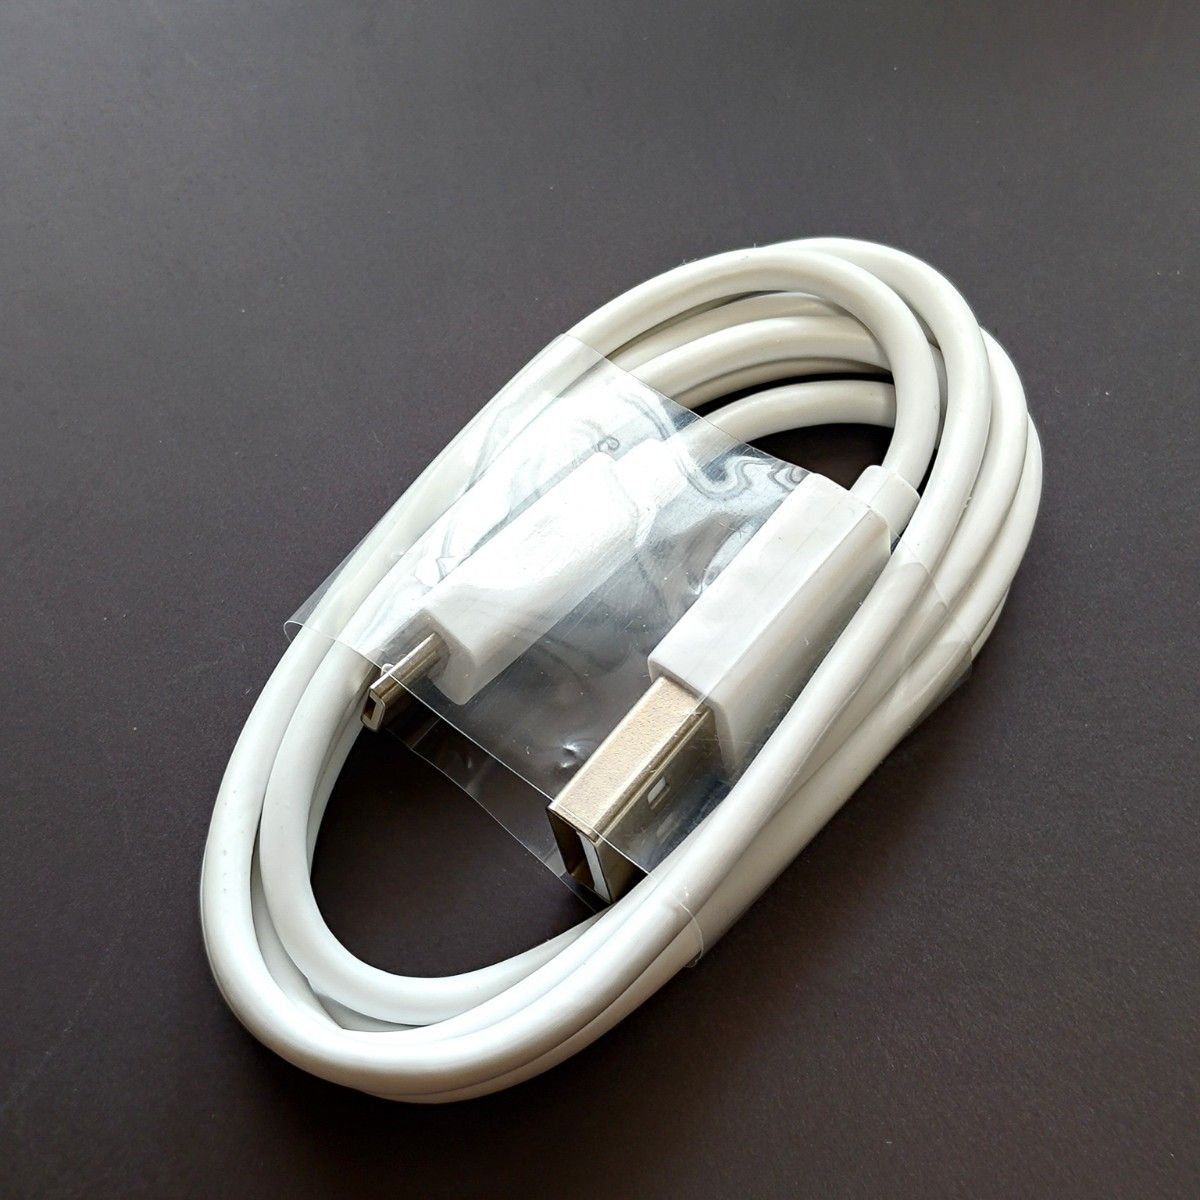 ②3個 ASUS純正品 充電ケーブル【USB-A⇒Micro-B】白色